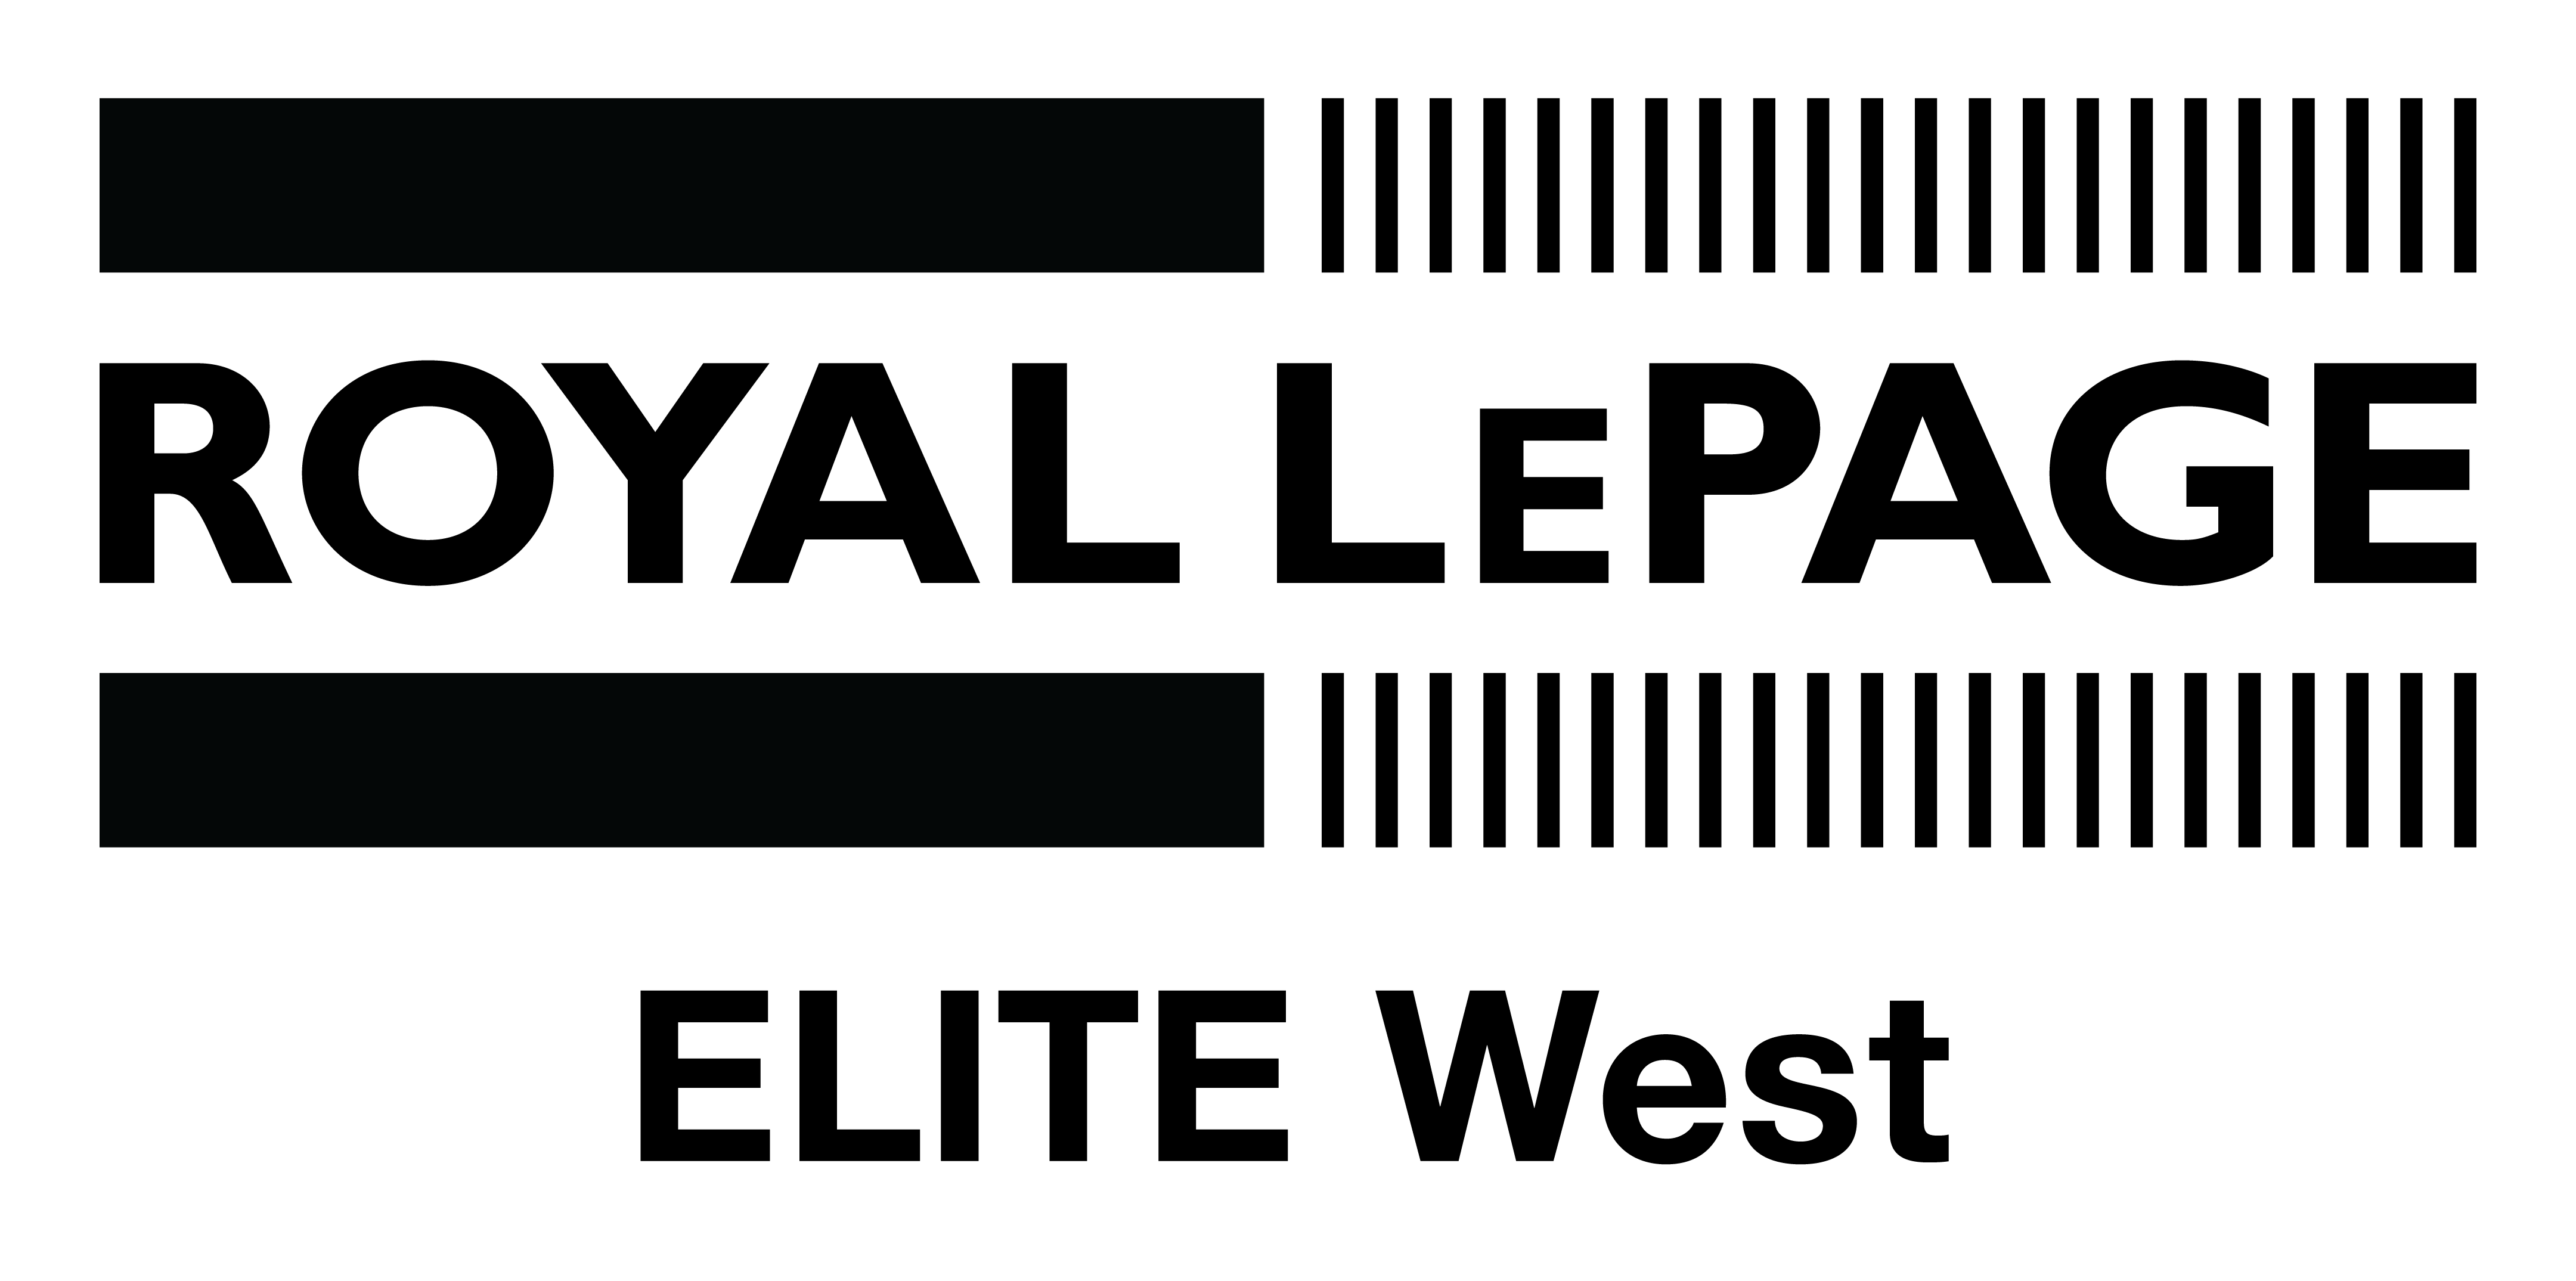 Royal LePage Logo - Black without White BG